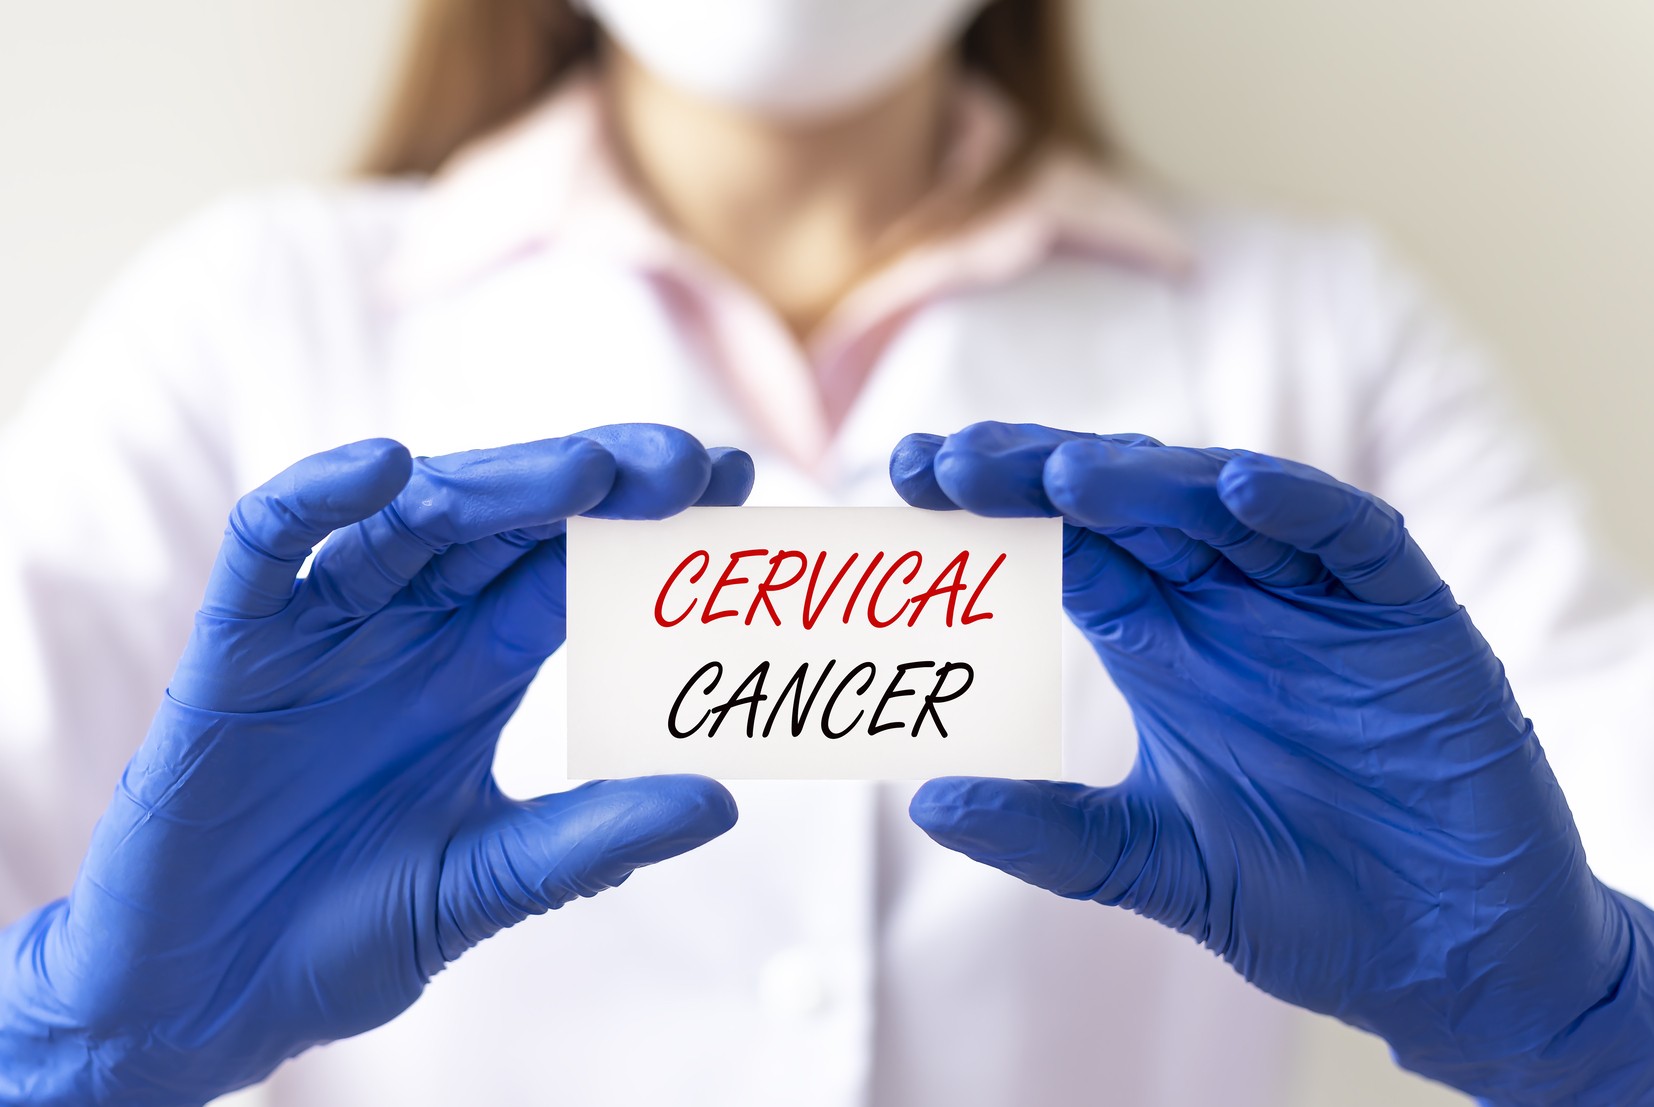 Screening for cervical cancer